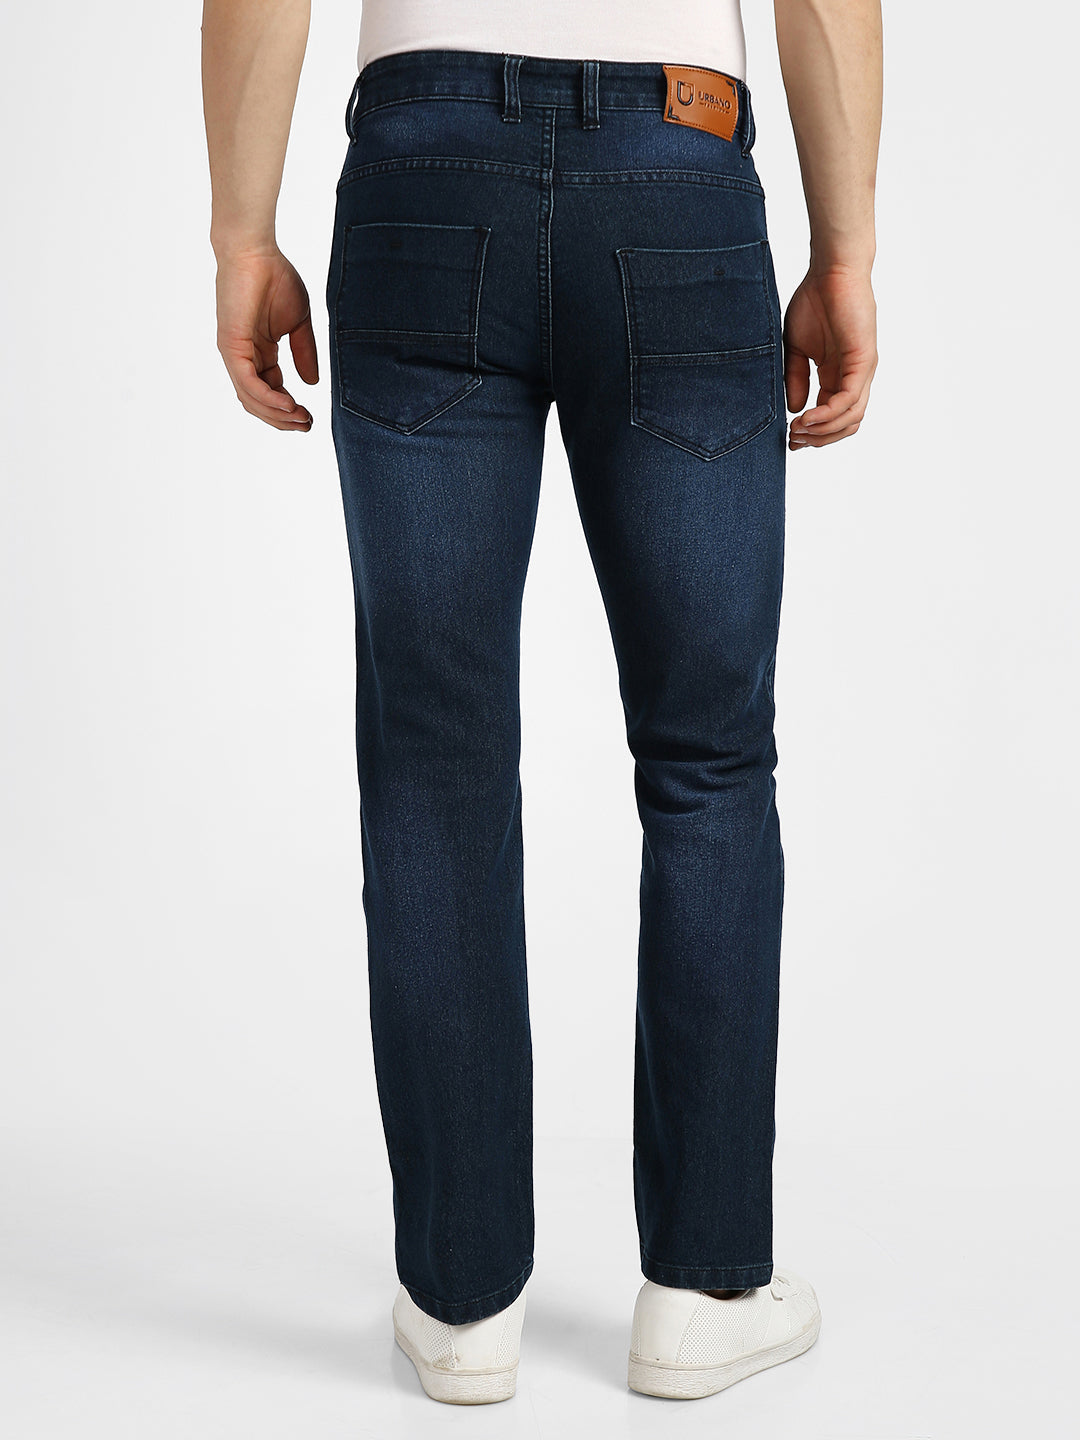 Men's Carbon Blue Regular Fit Washed Jeans Stretchable